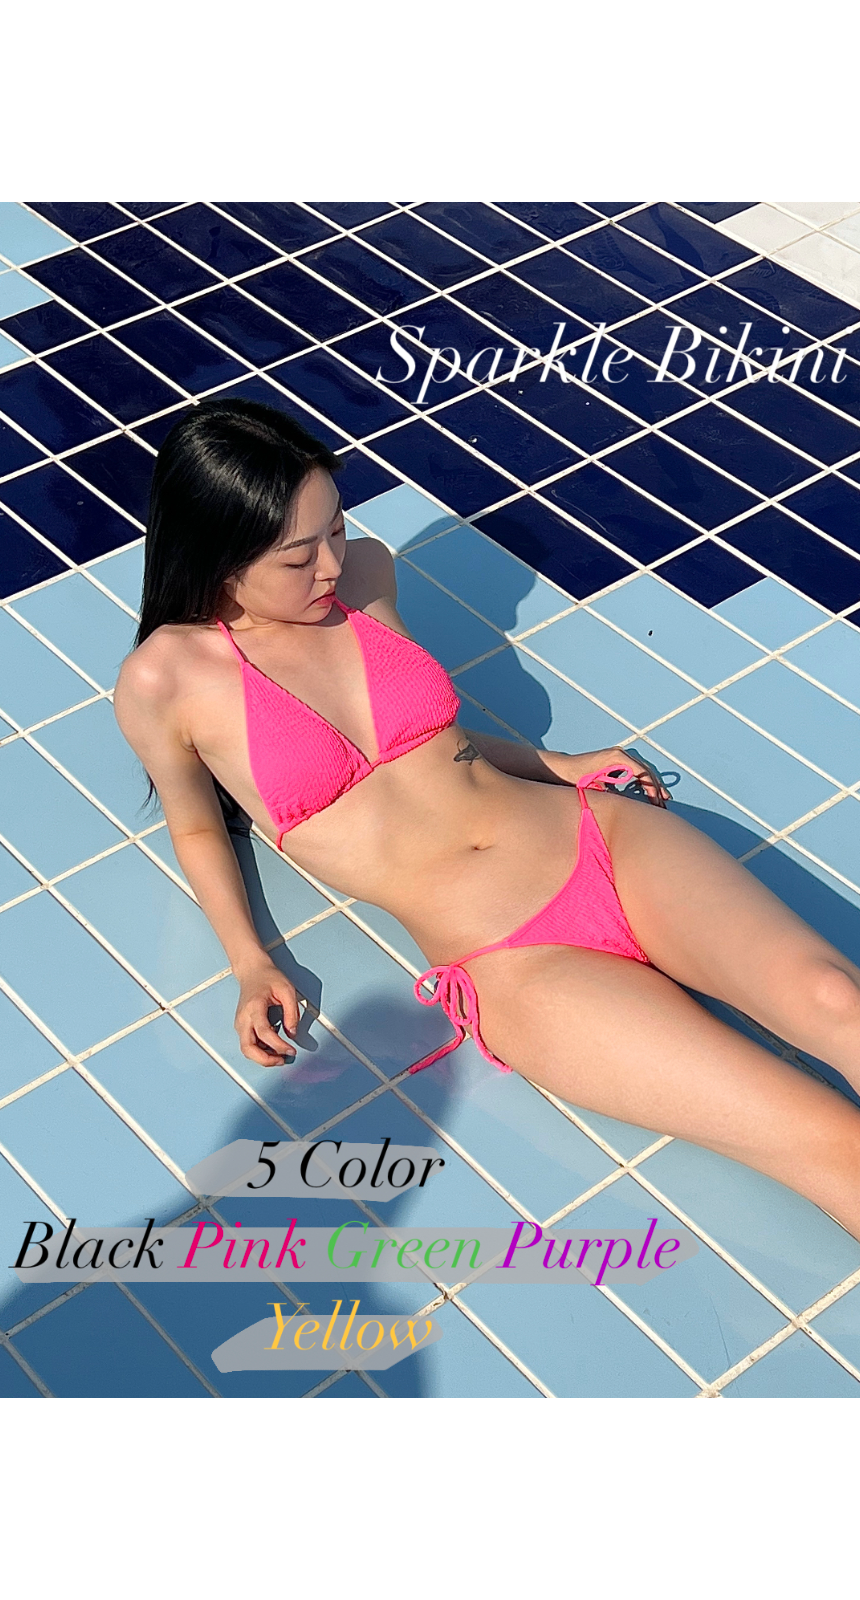 Sparkle Bikini